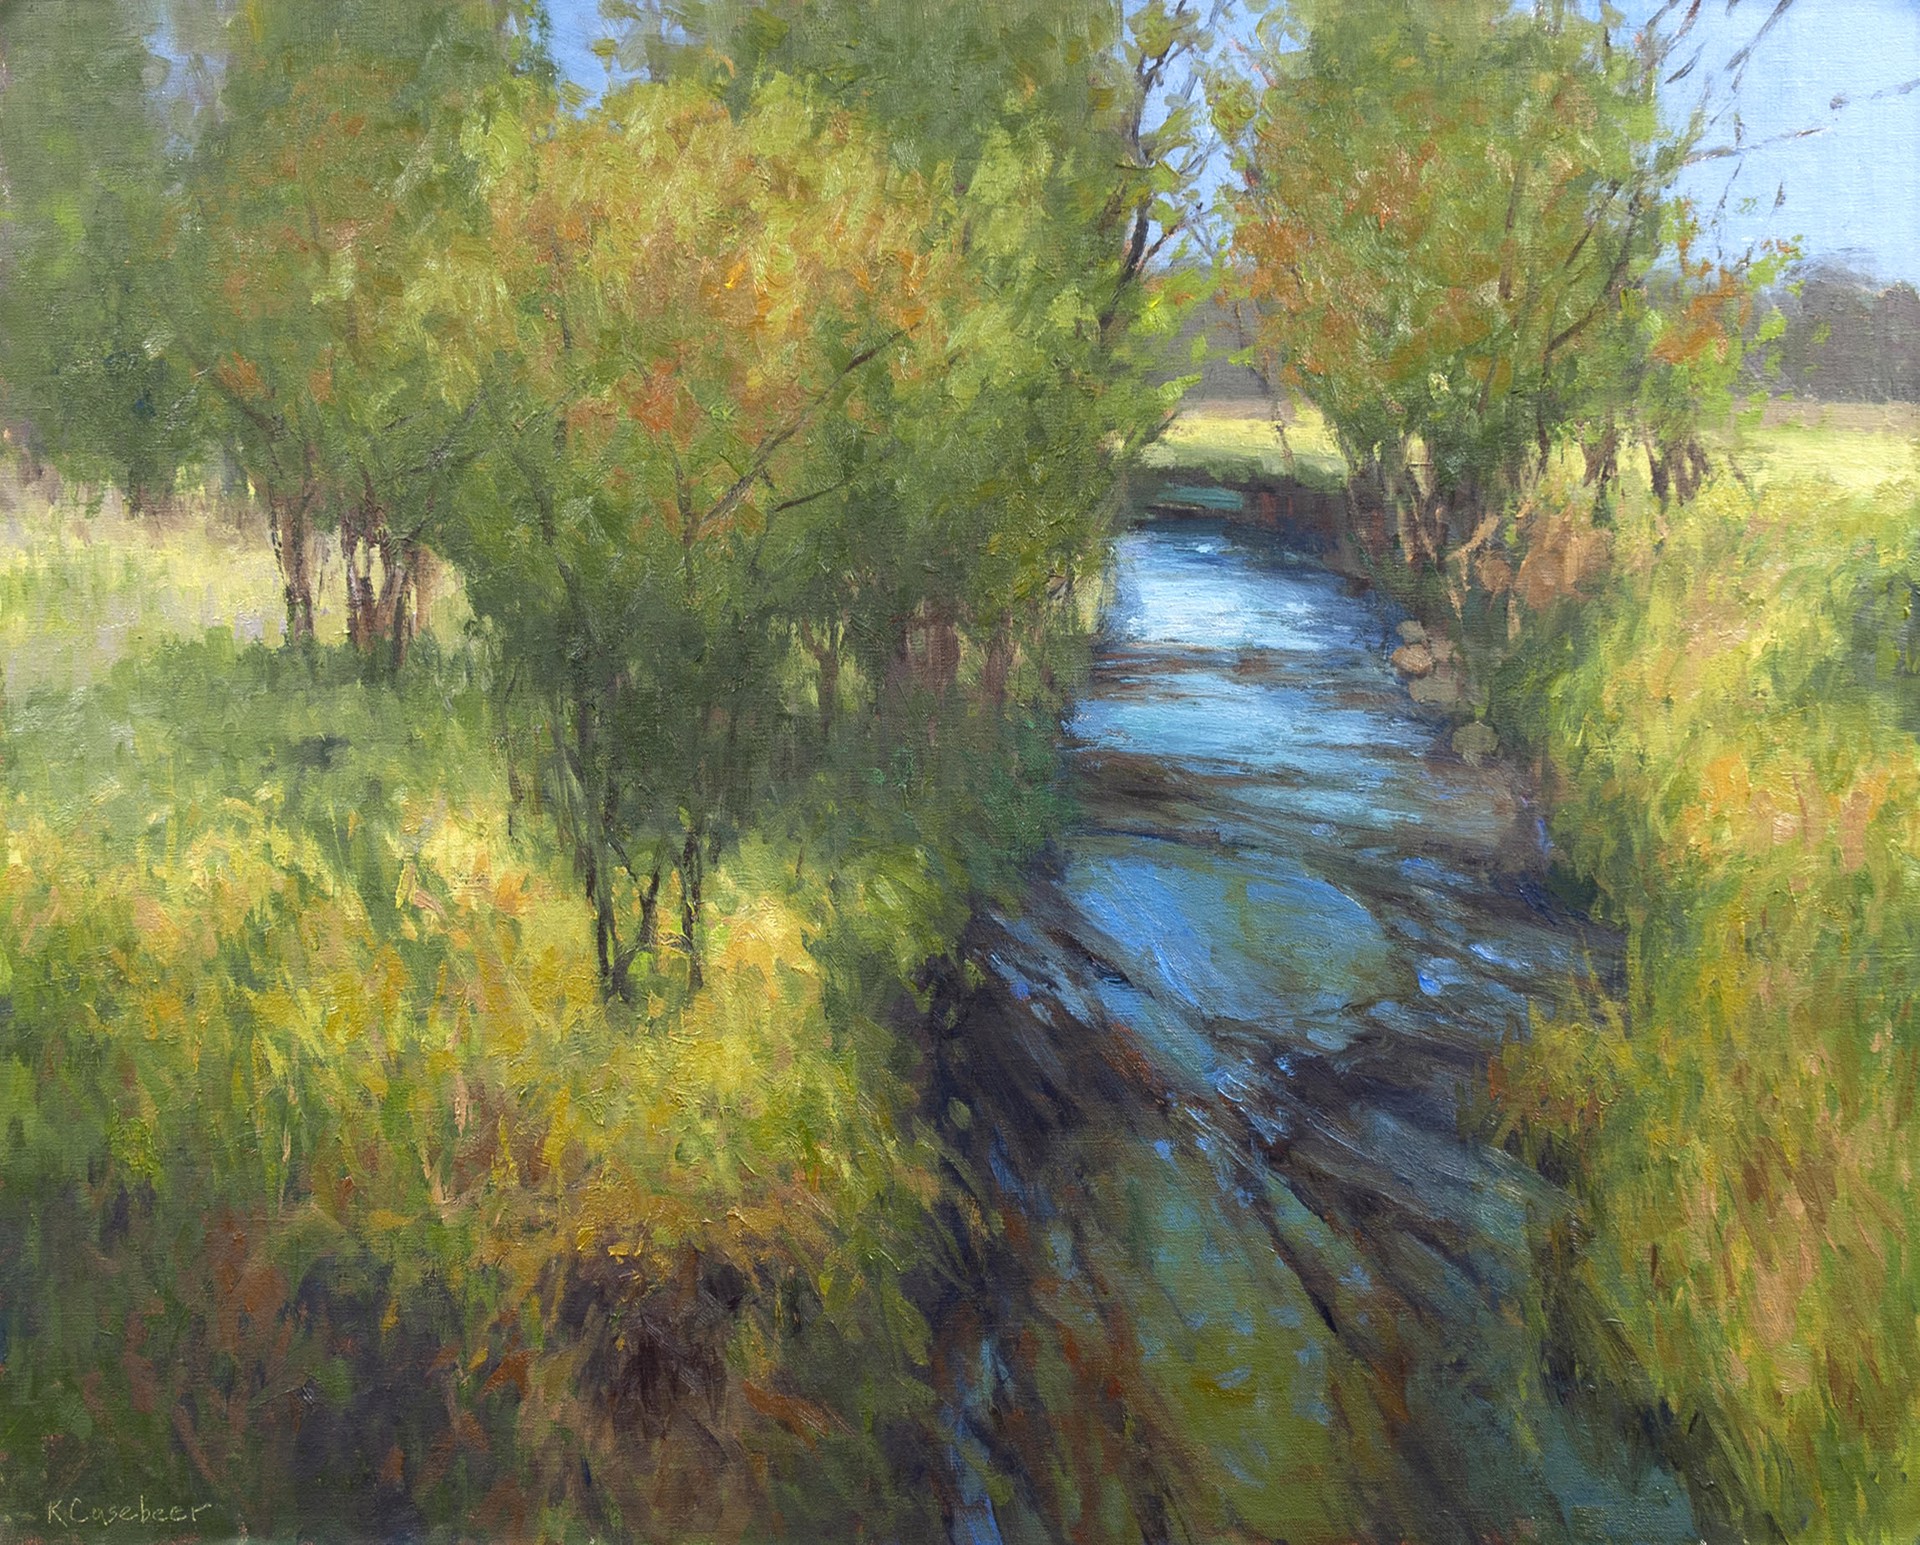 Spring on Swede Creek by Kim Casebeer